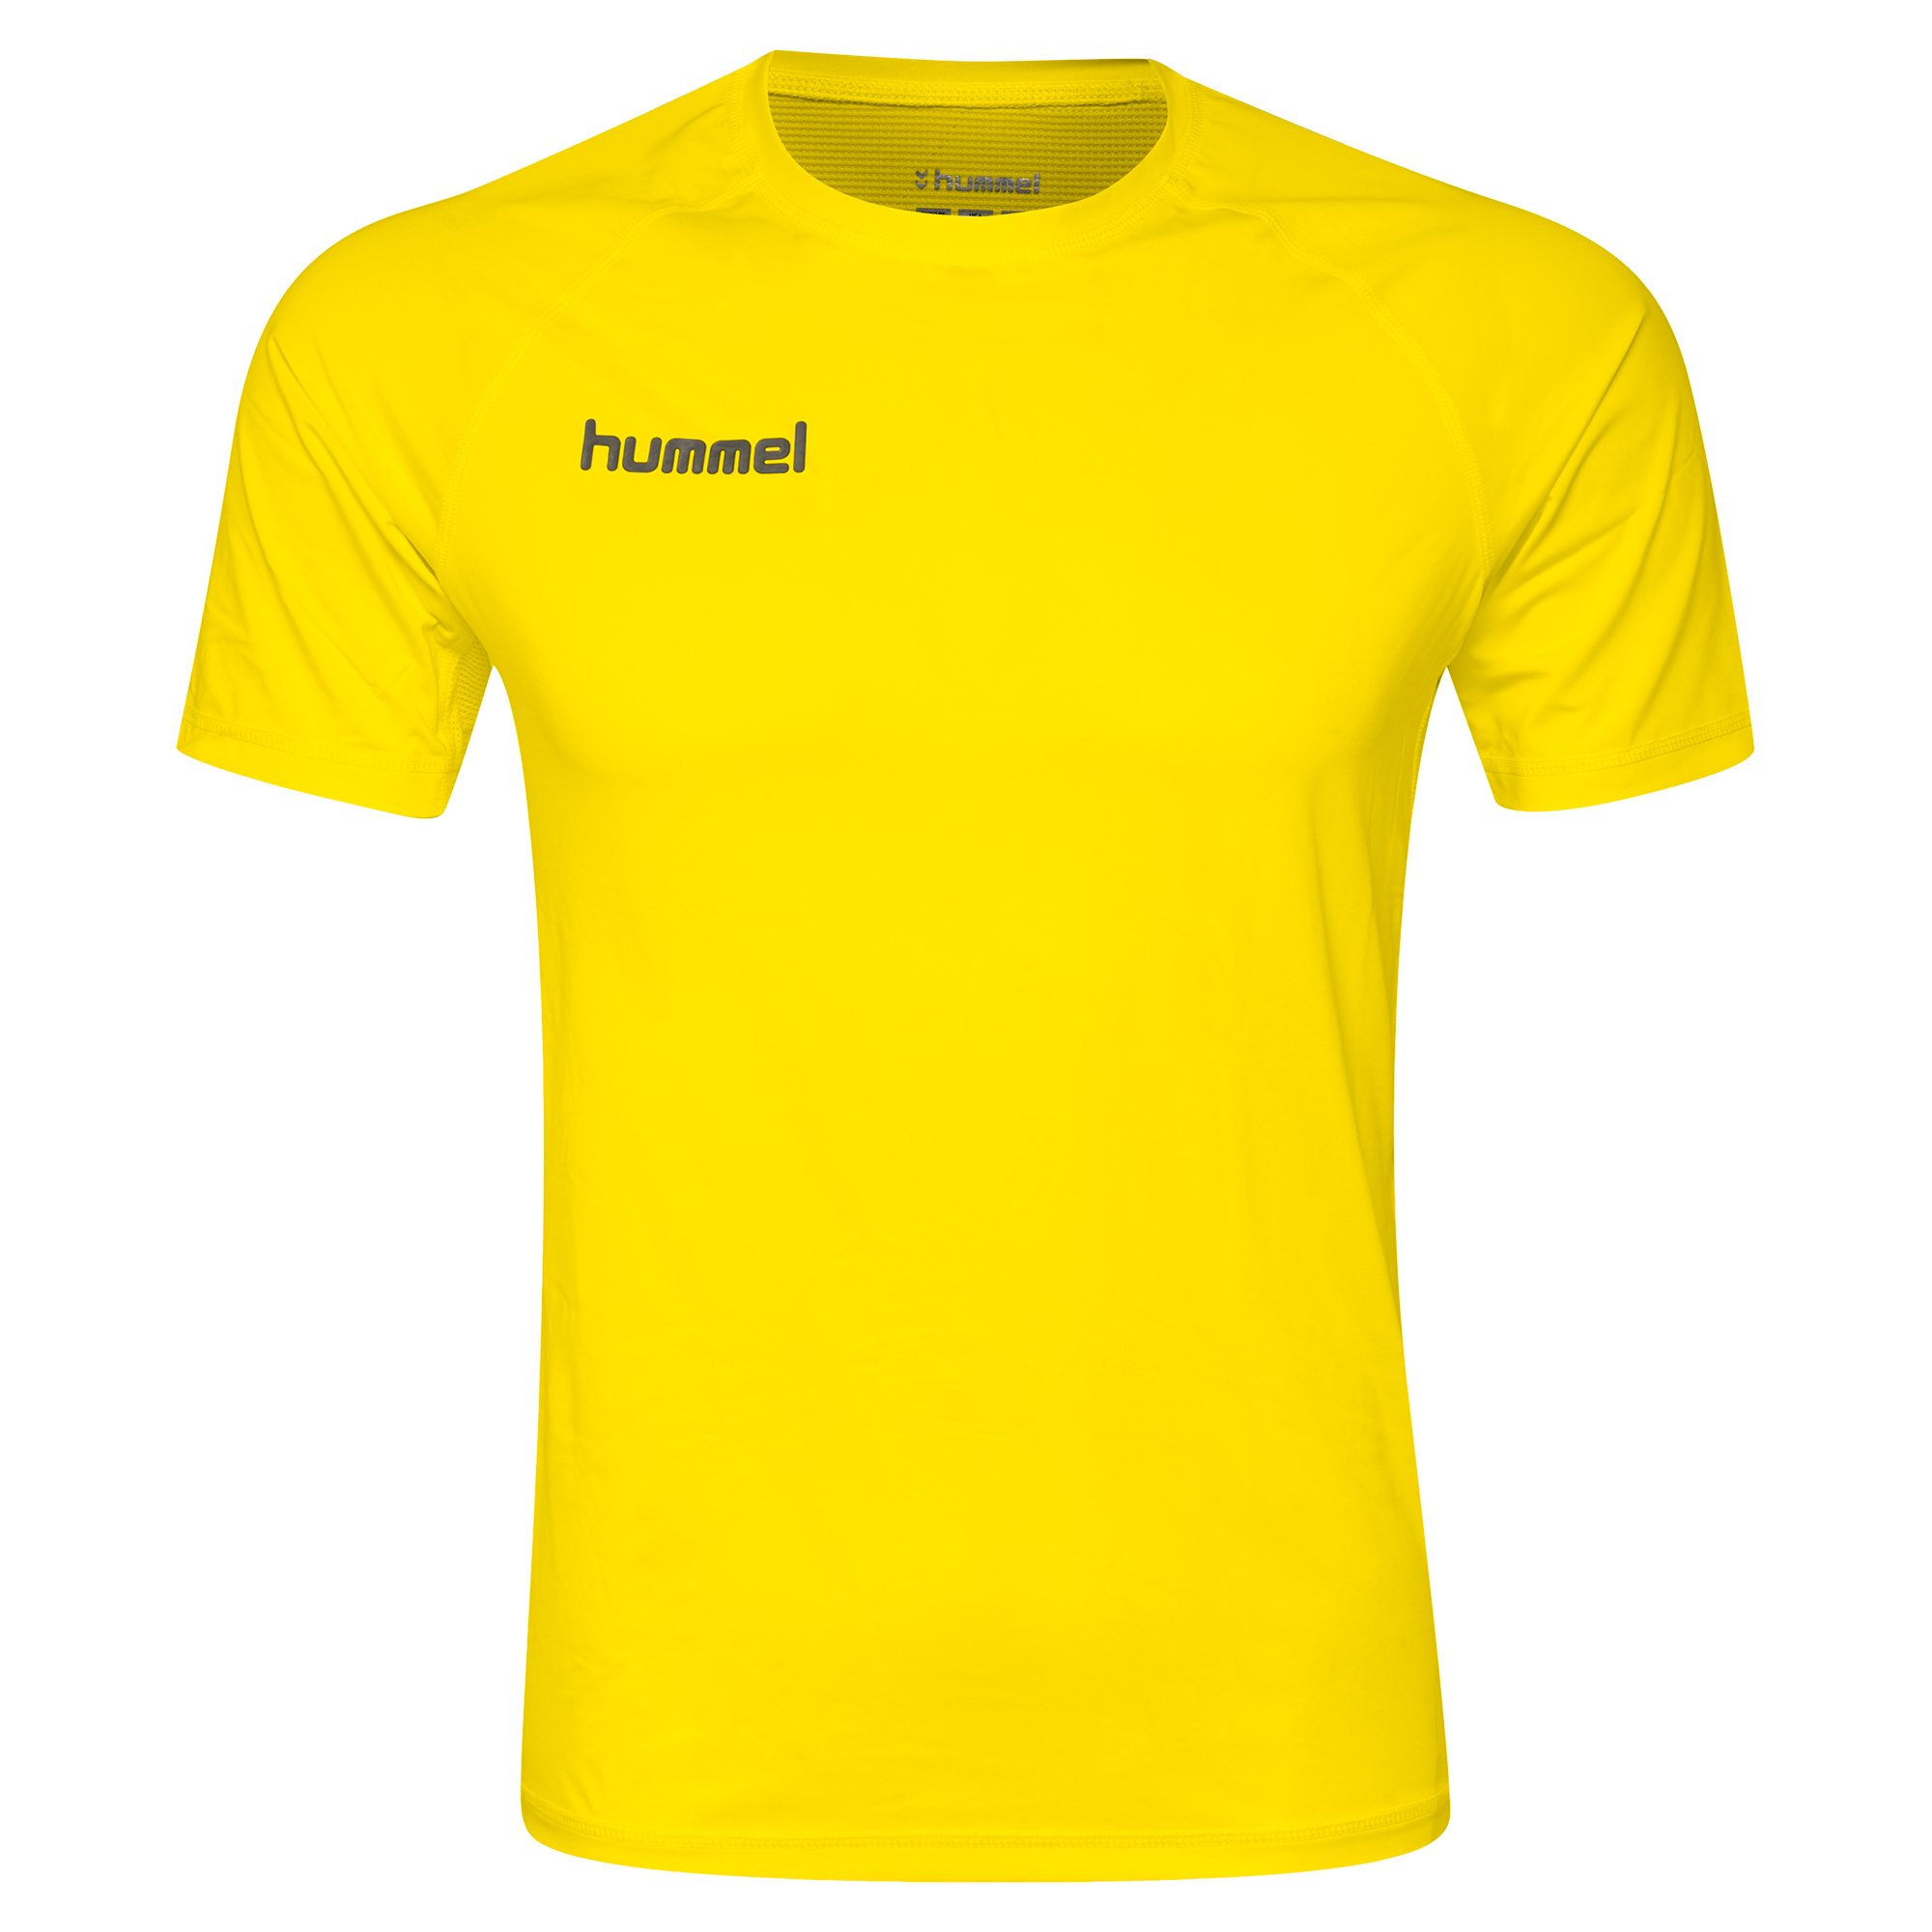 Hummel First Performance T-Shirt